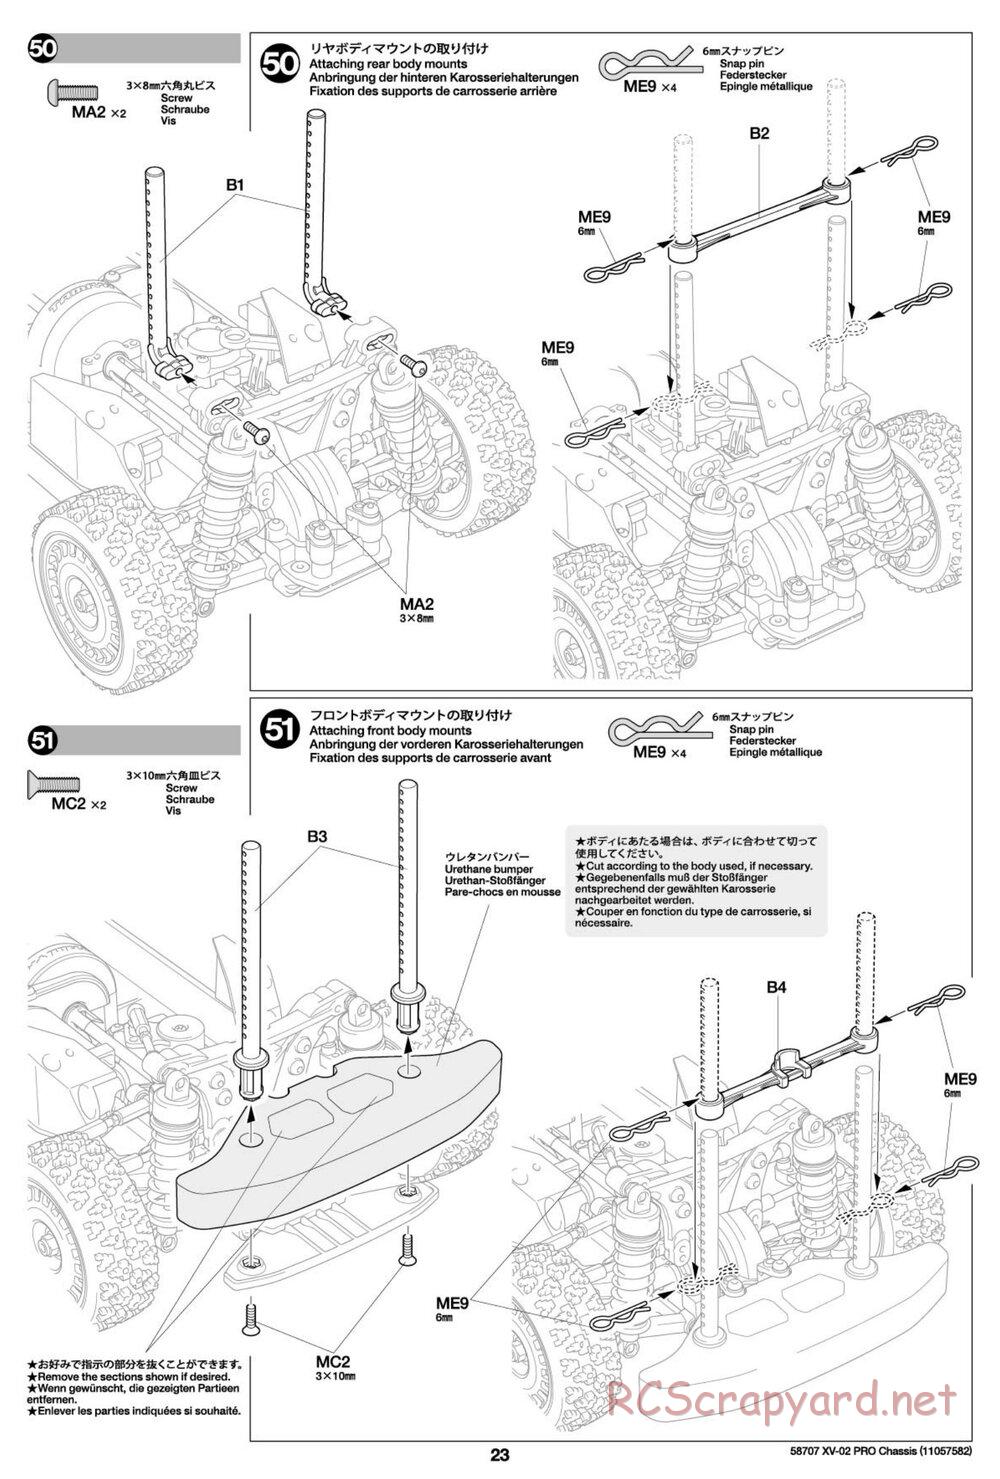 Tamiya - XV-02 Pro Chassis - Manual - Page 23